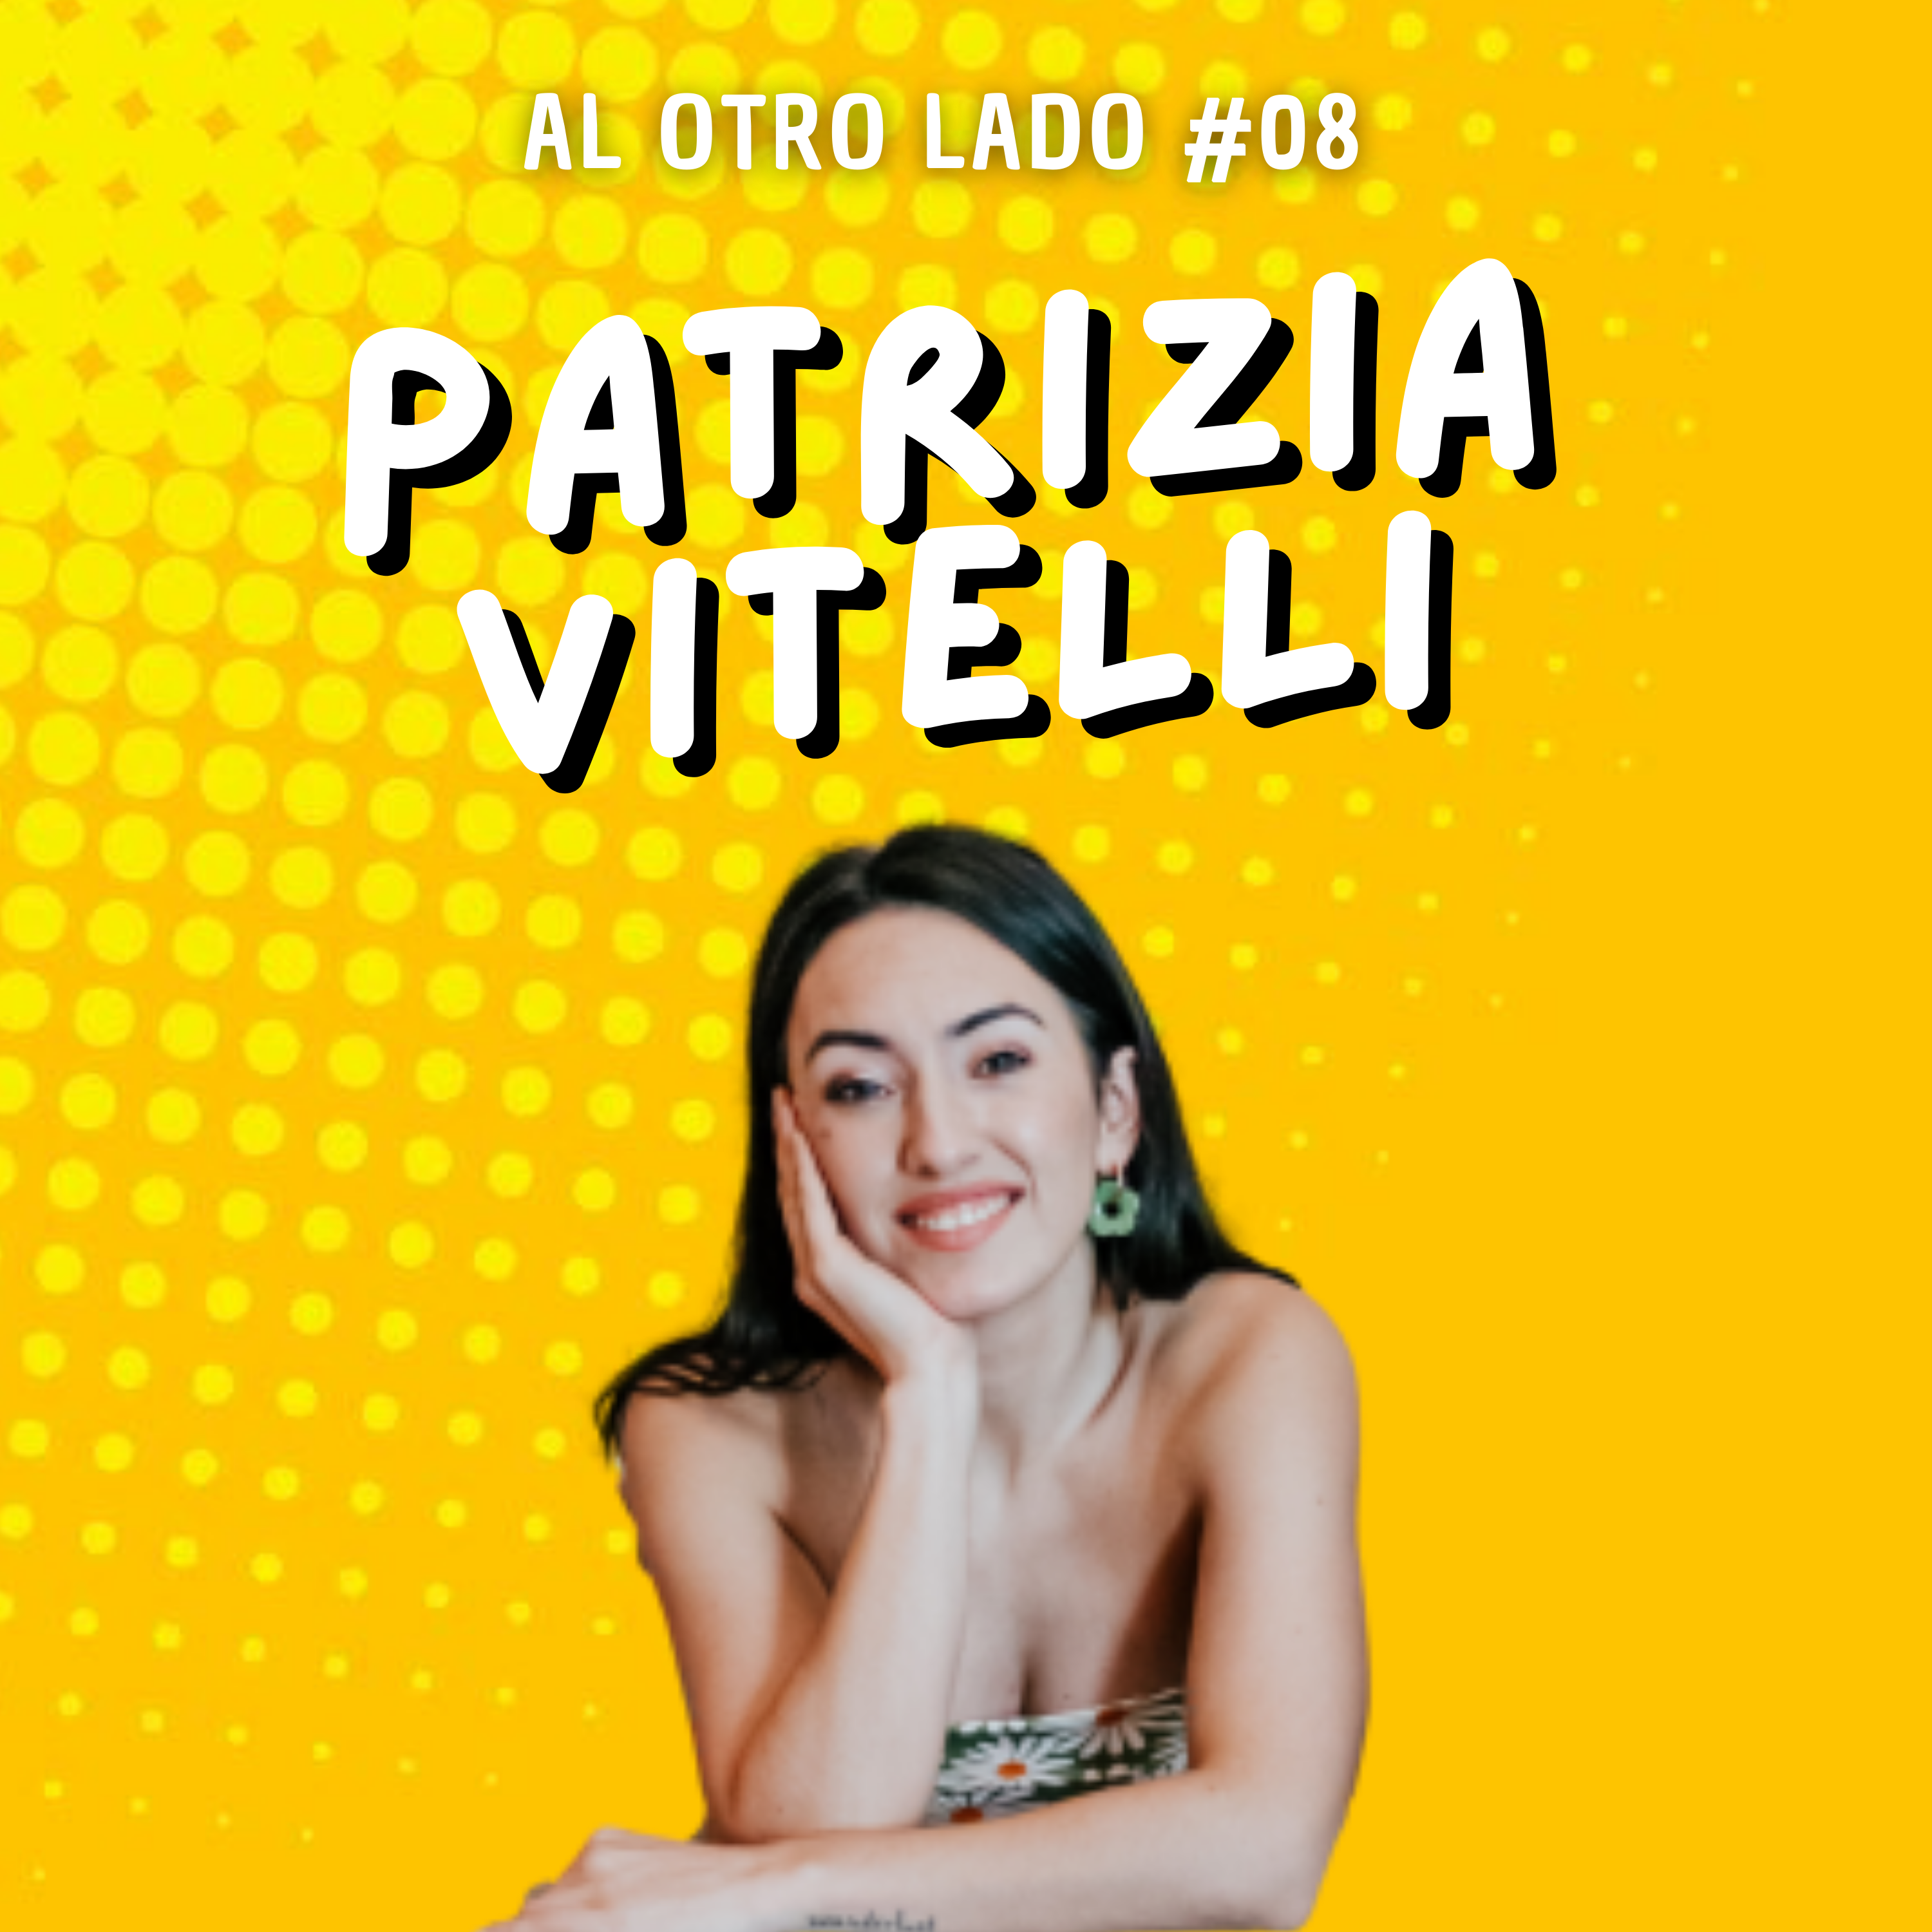 Patrizia Vitelli: Sobre foodiario, reinventarse, el pollo al batzoki y contar calorías